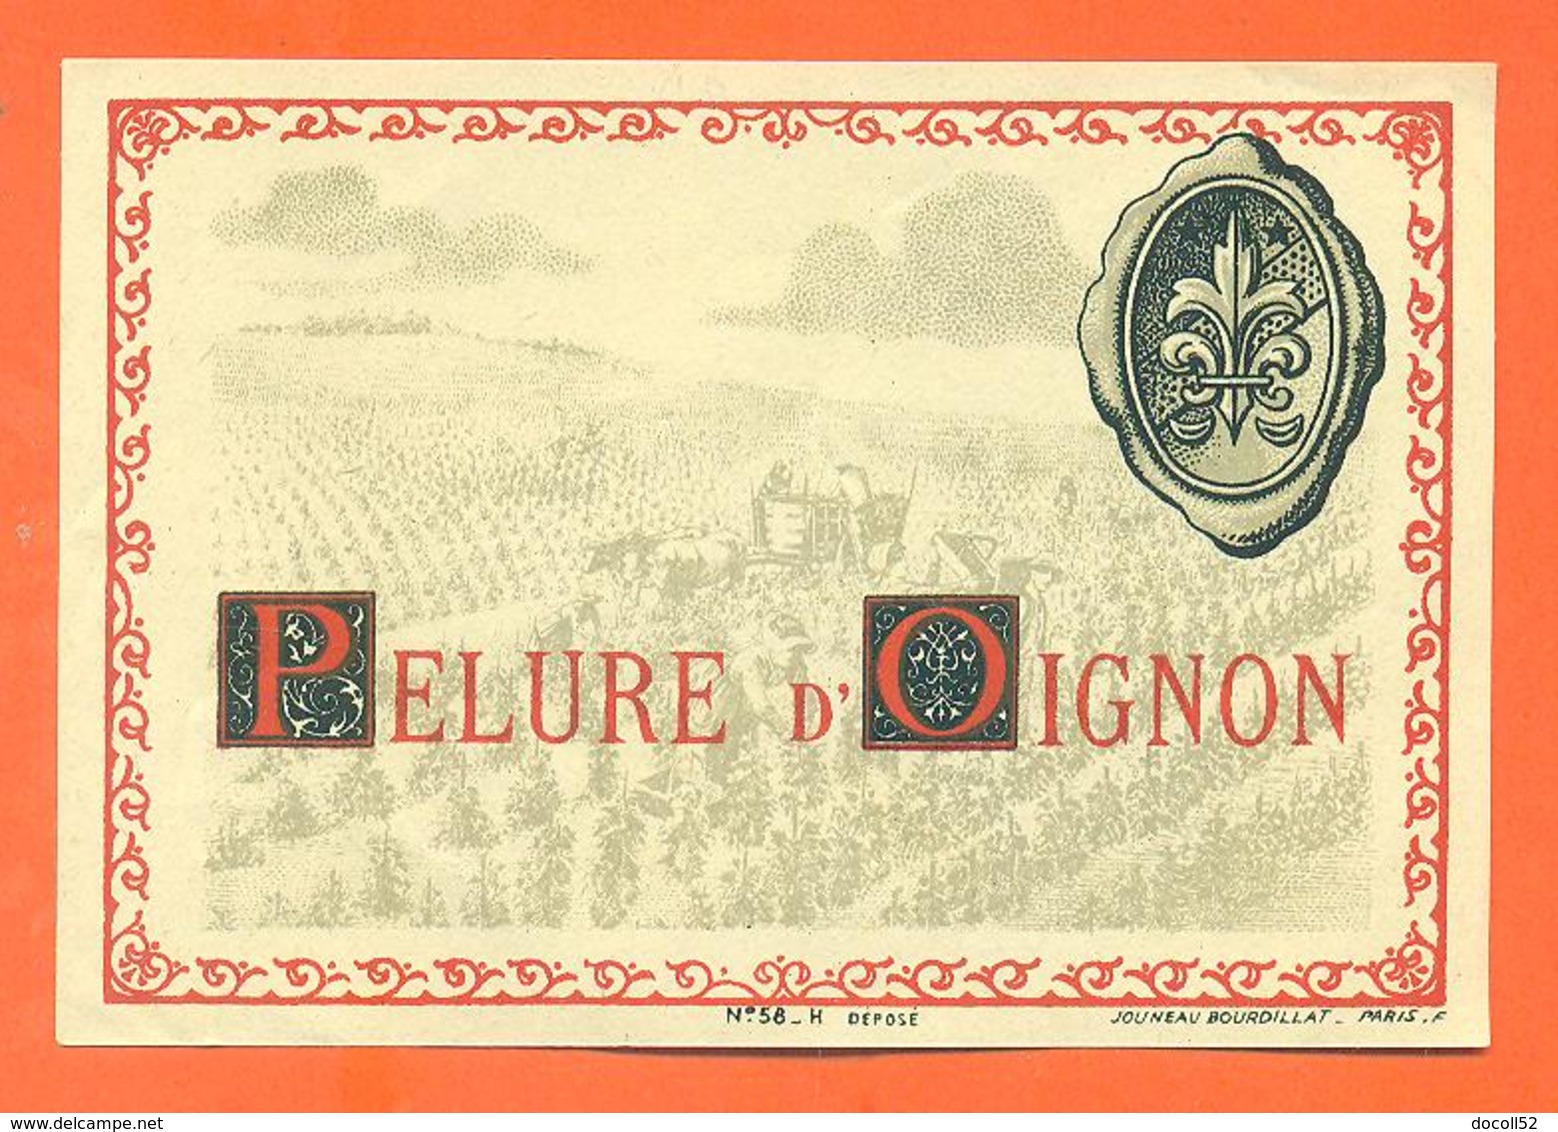 étiquette Ancienne Vin De Pelure D'oignon - 75 Cl - Roséwijn